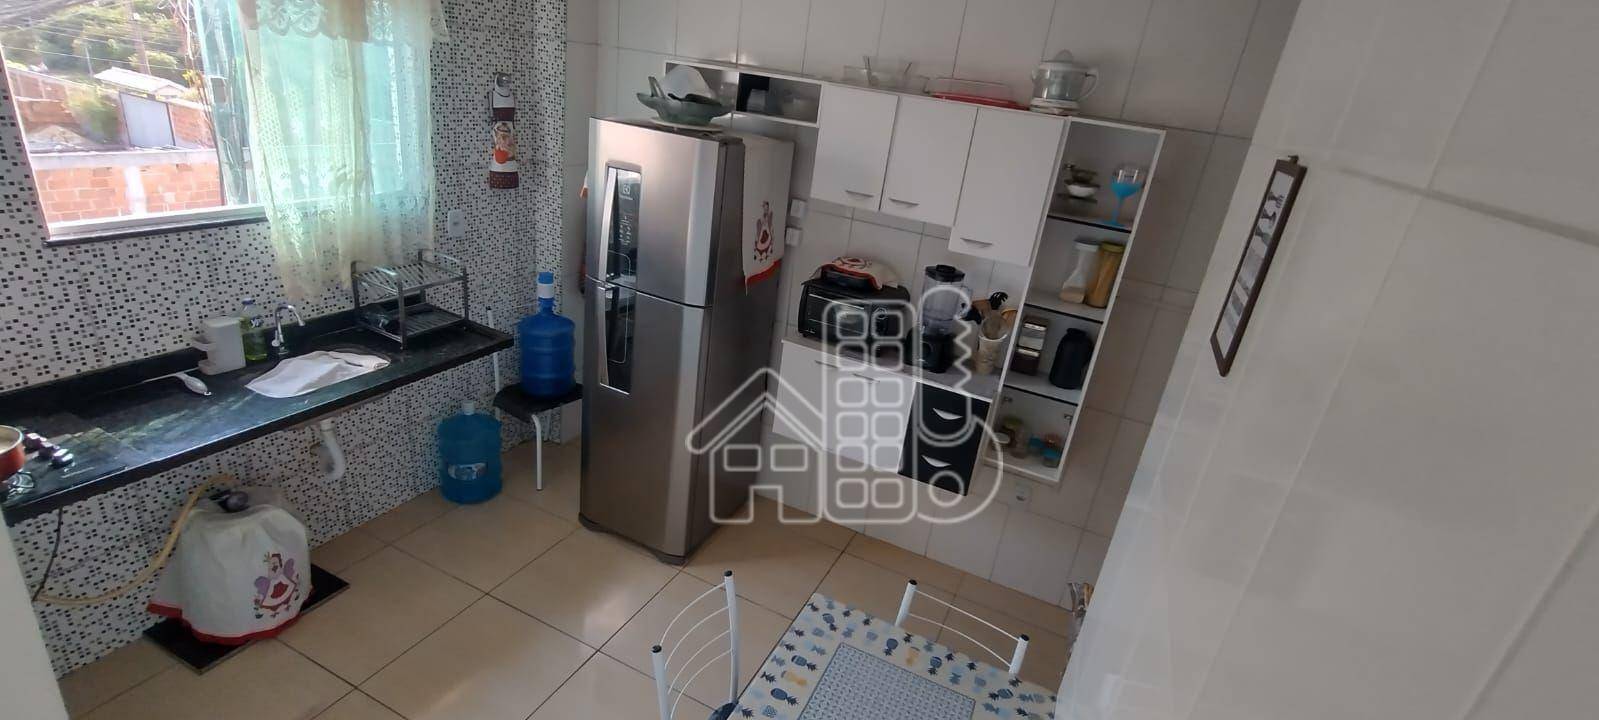 Apartamento com 2 dormitórios à venda, 61 m² por R$ 240.000,00 - Jardim Atlântico Leste (Itaipuaçu) - Maricá/RJ